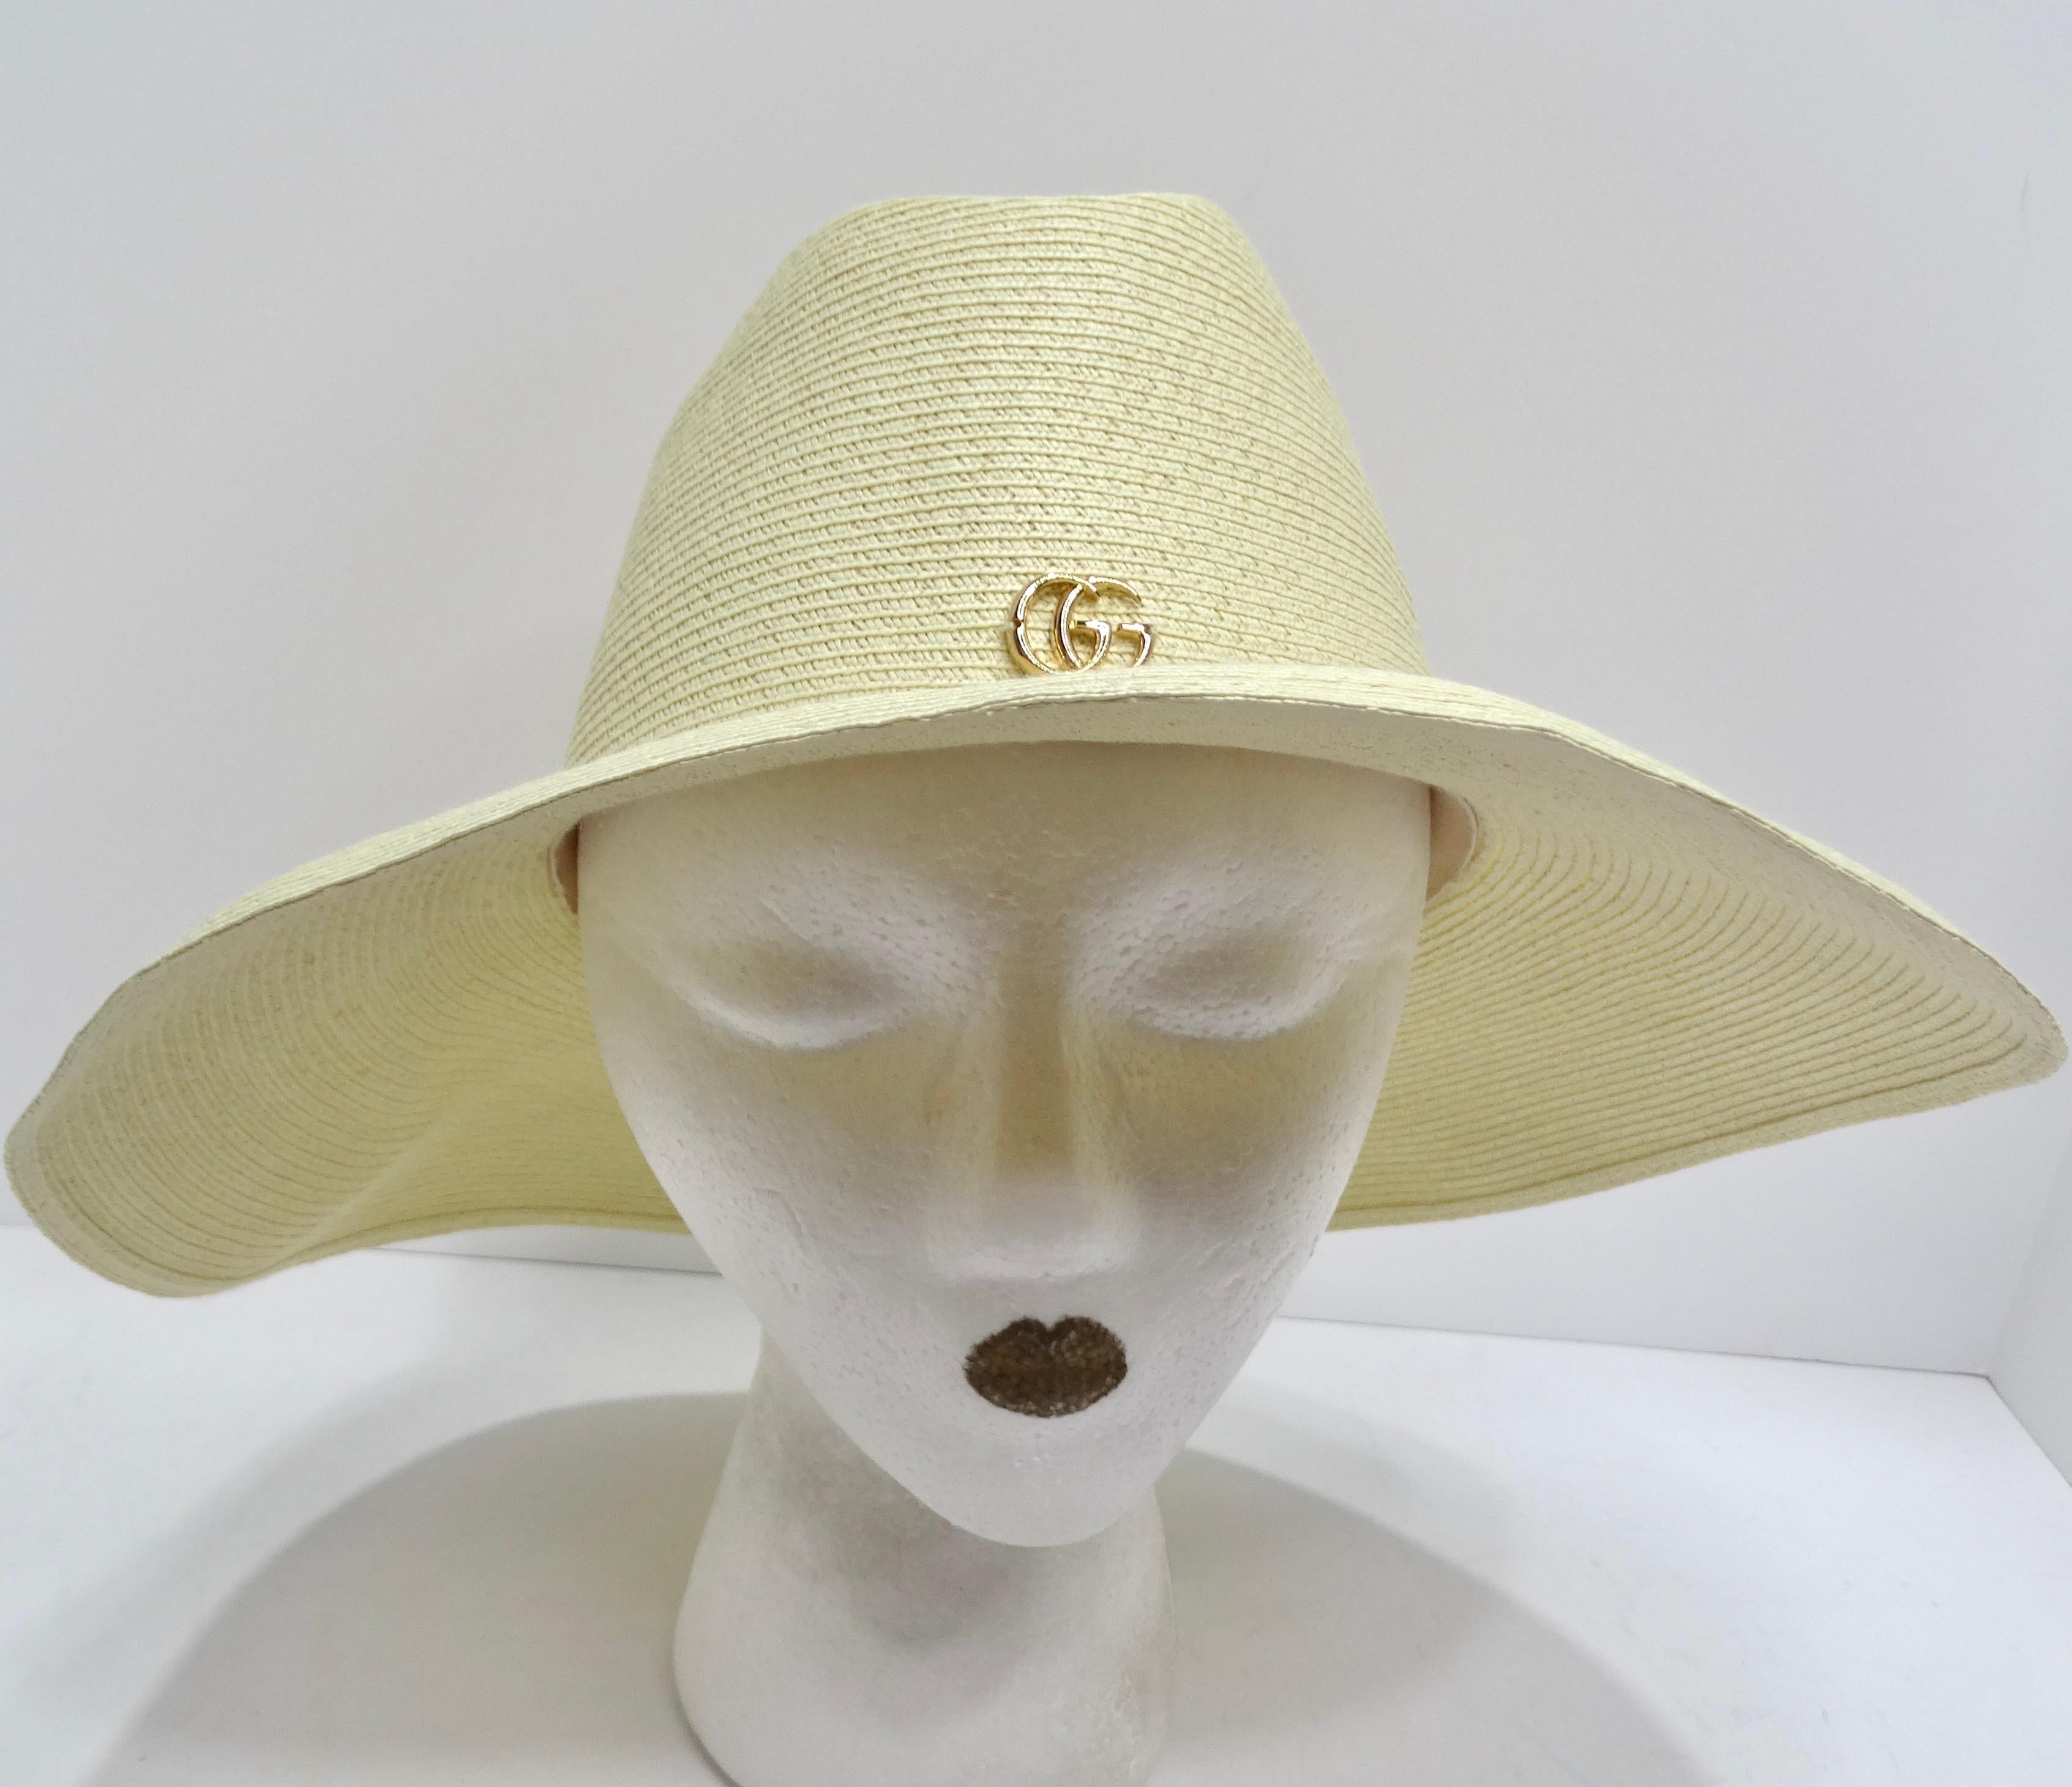 Voici le chapeau à larges bords Gucci Papier - l'incarnation du chic et du luxe pour les journées ensoleillées. Confectionné en paille de raphia ivoire et orné d'un logo Gucci en or brillant, ce chapeau est plus qu'une simple protection solaire,